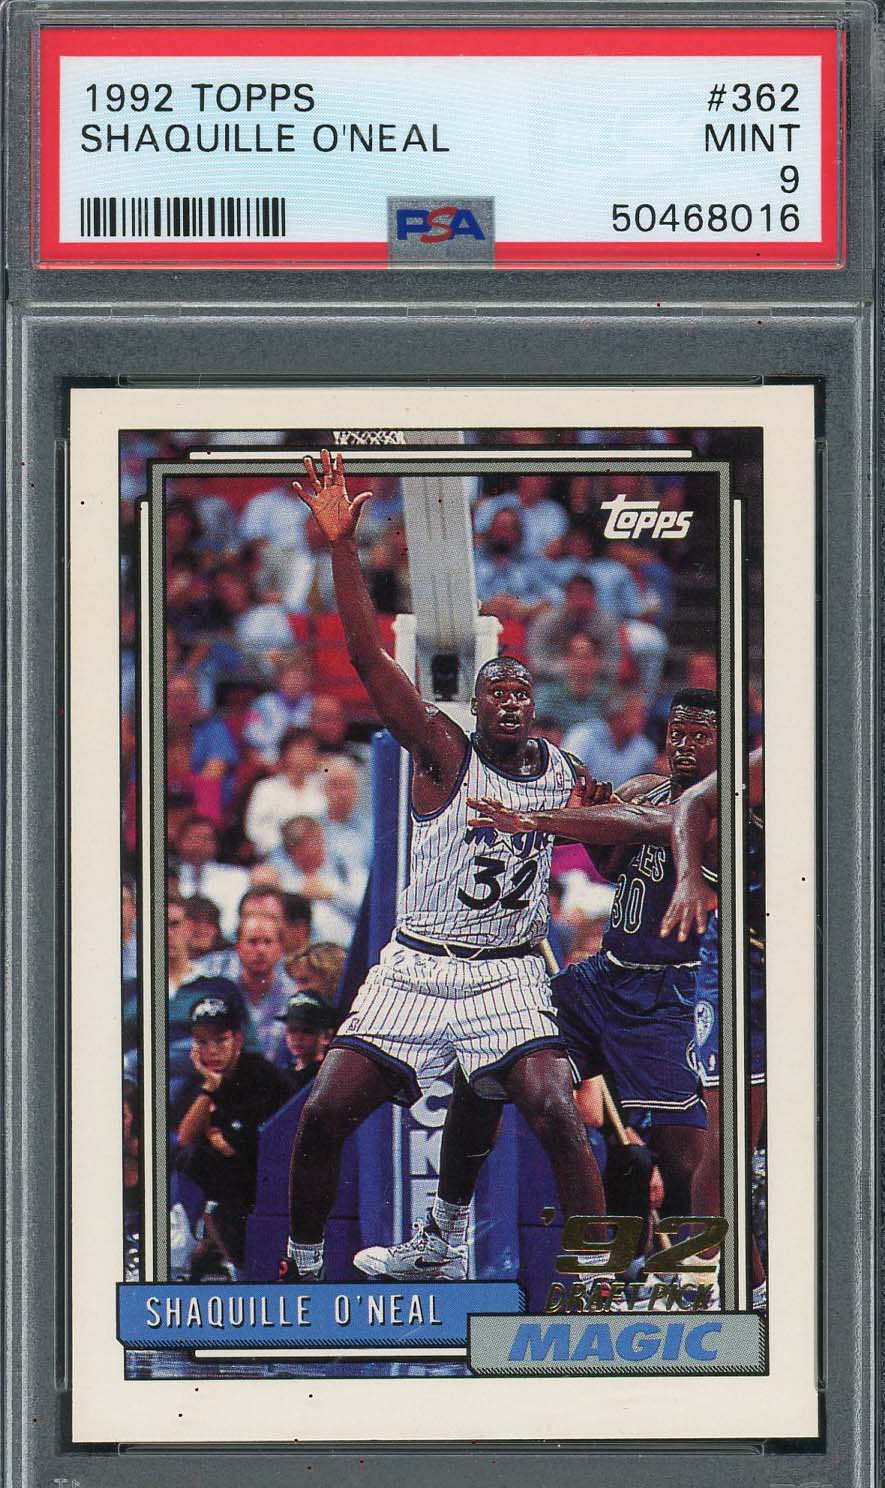 シャキール オニール 1992 トップス バスケットボール ルーキー カード ...